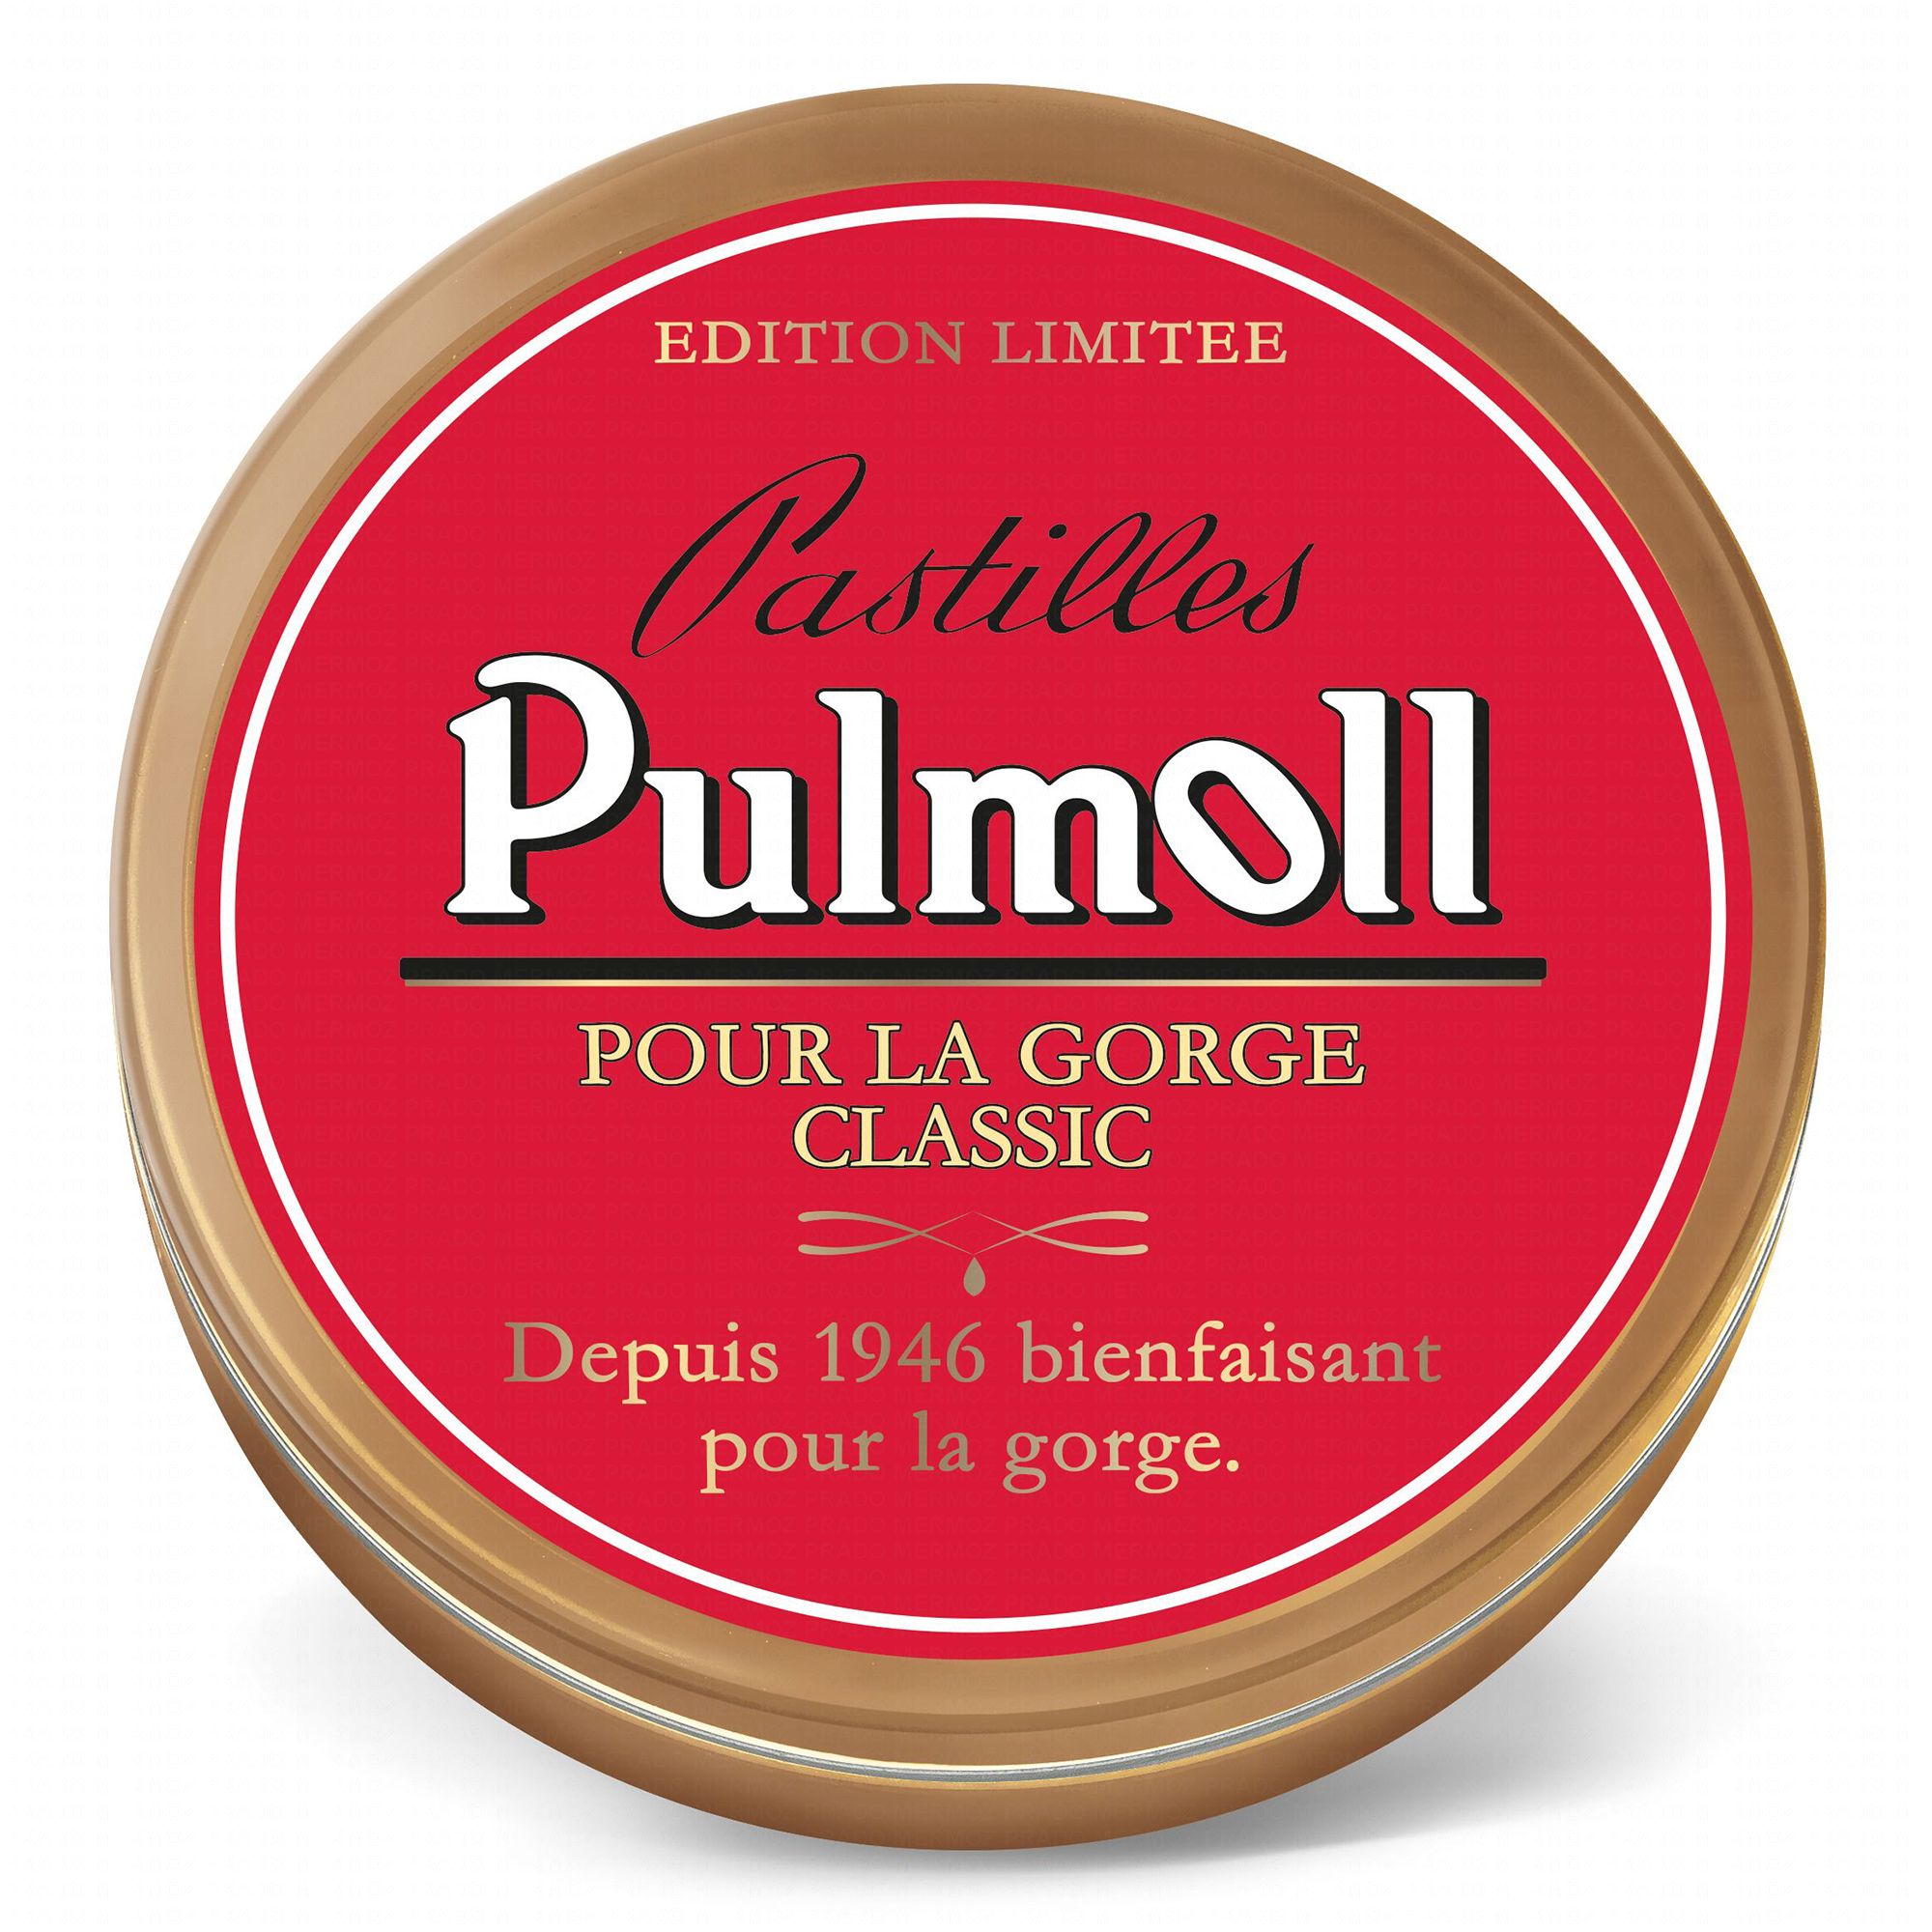 PULMOLL Pastilles pour la gorge classic boîte de 75g - Pharmacie